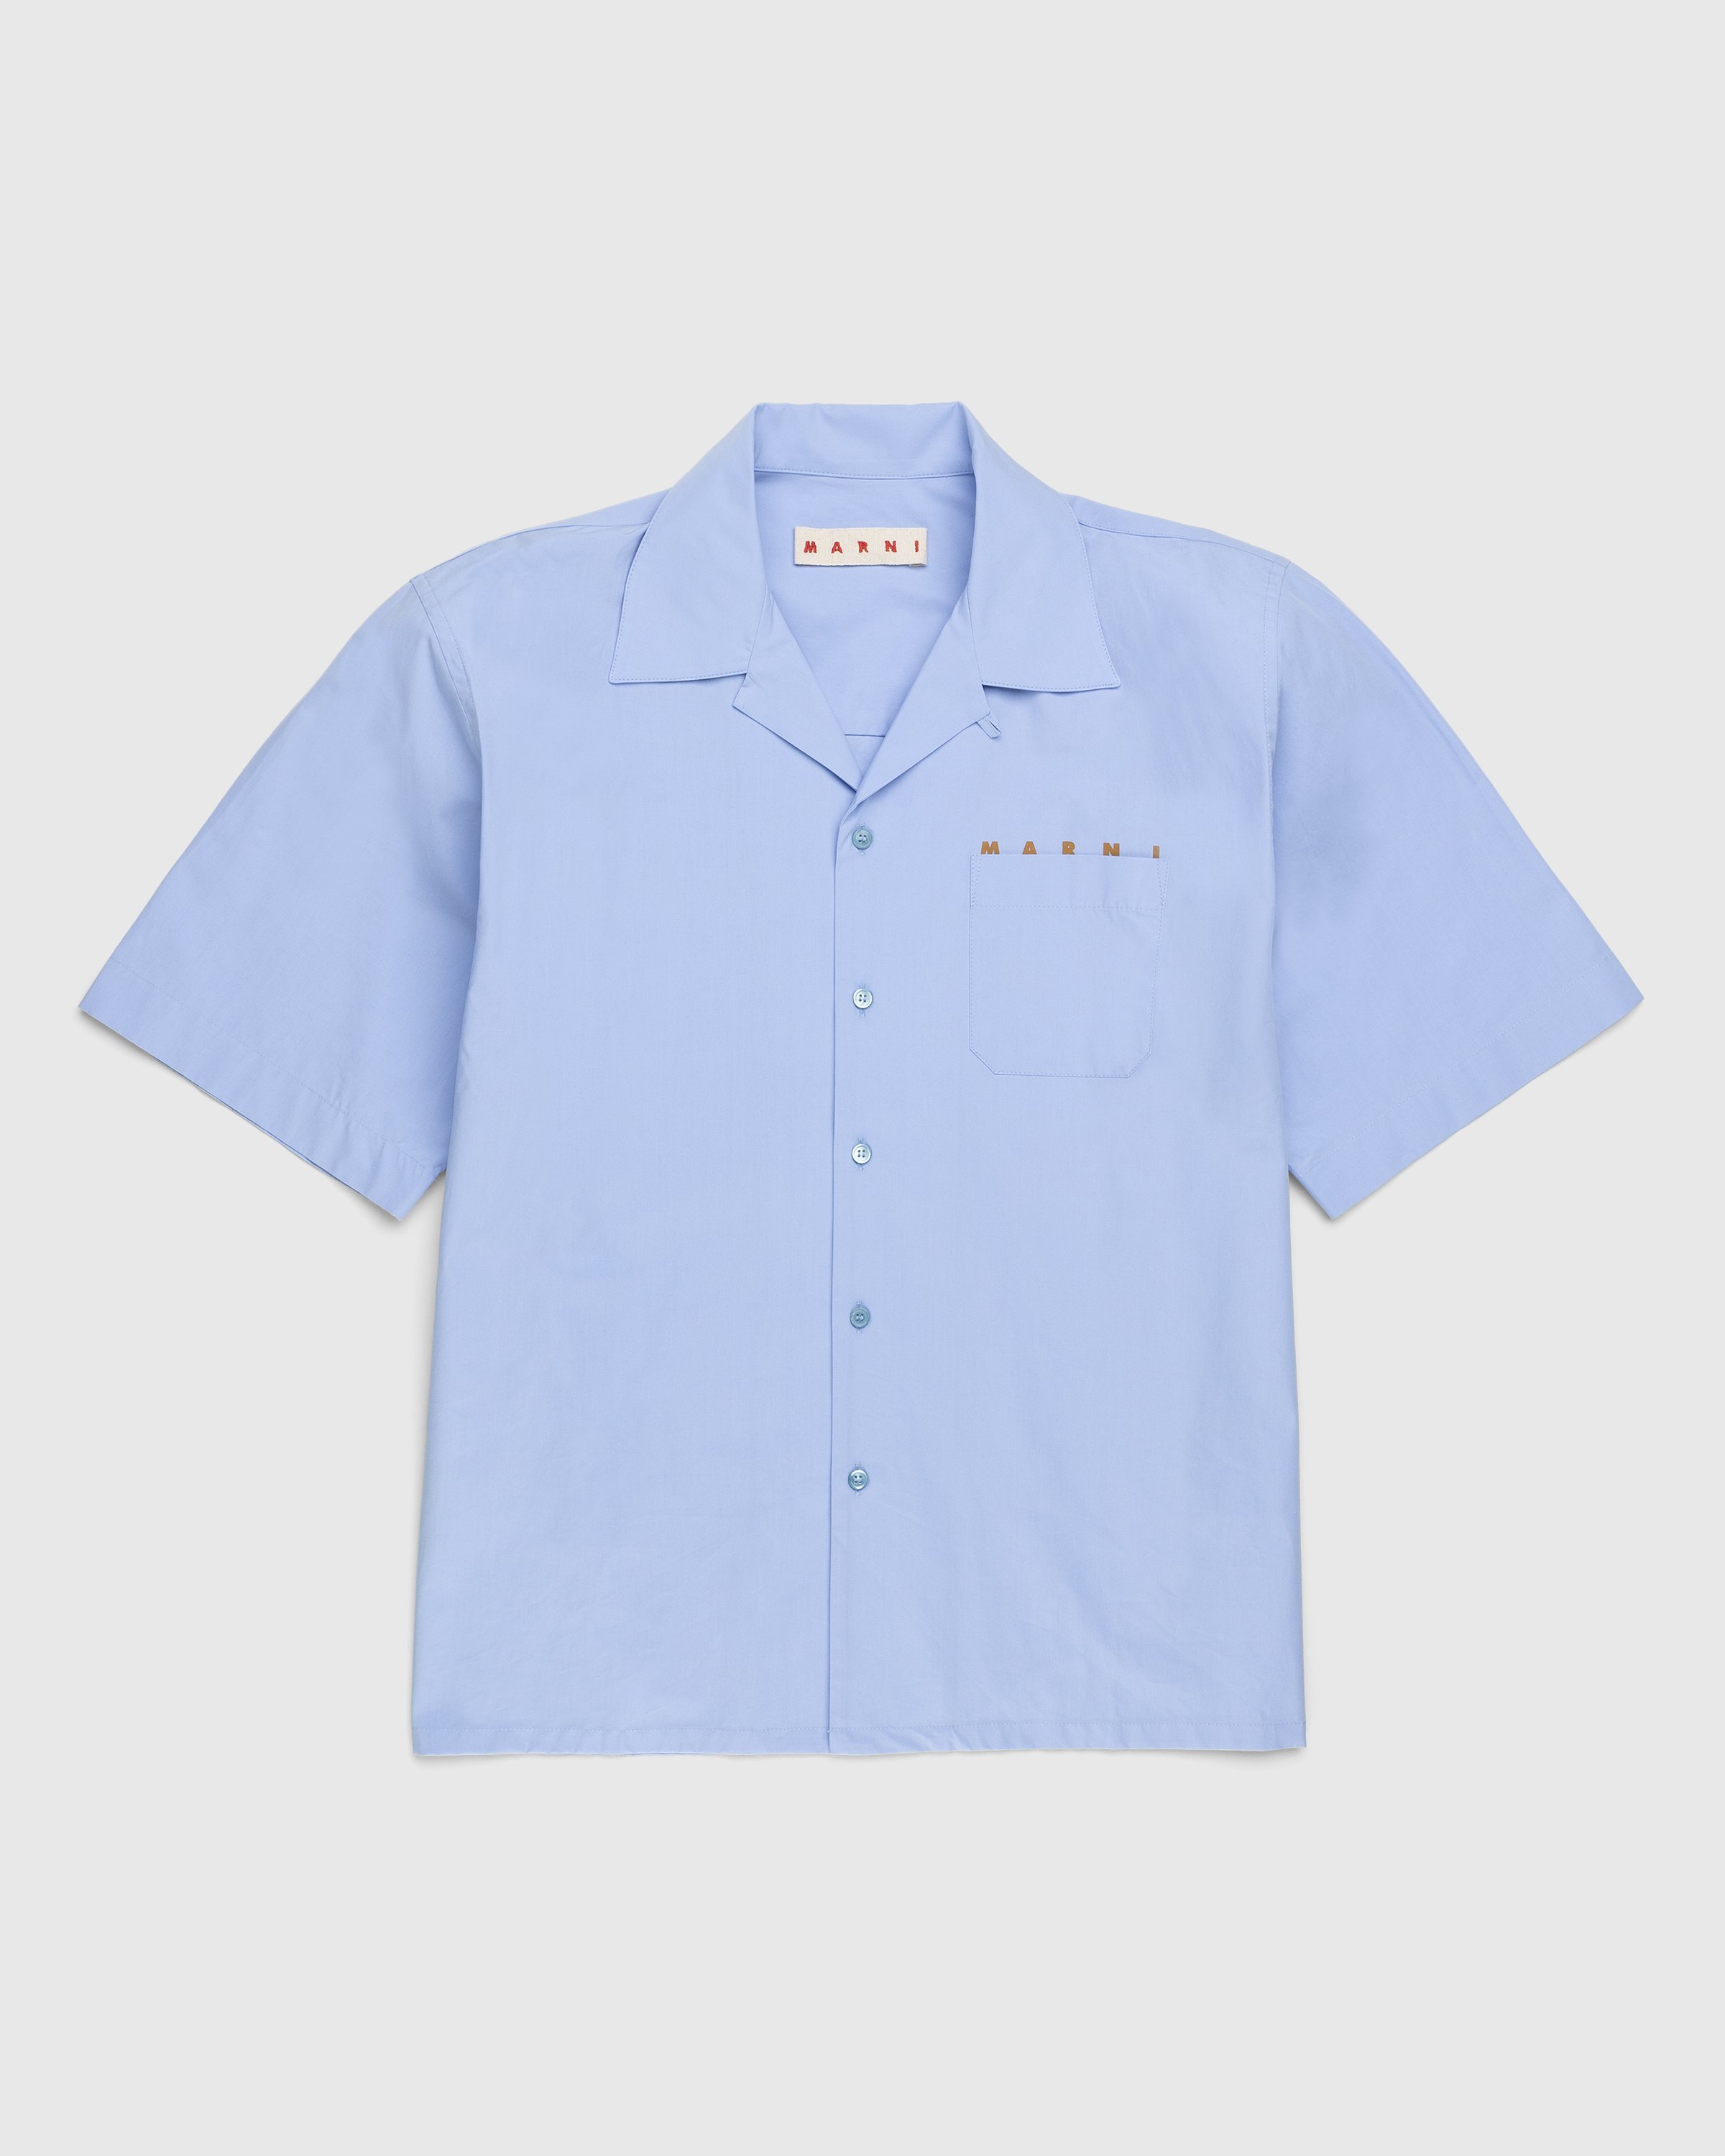 Marni - Logo Bowling Shirt Blue - Clothing - Blue - Image 1